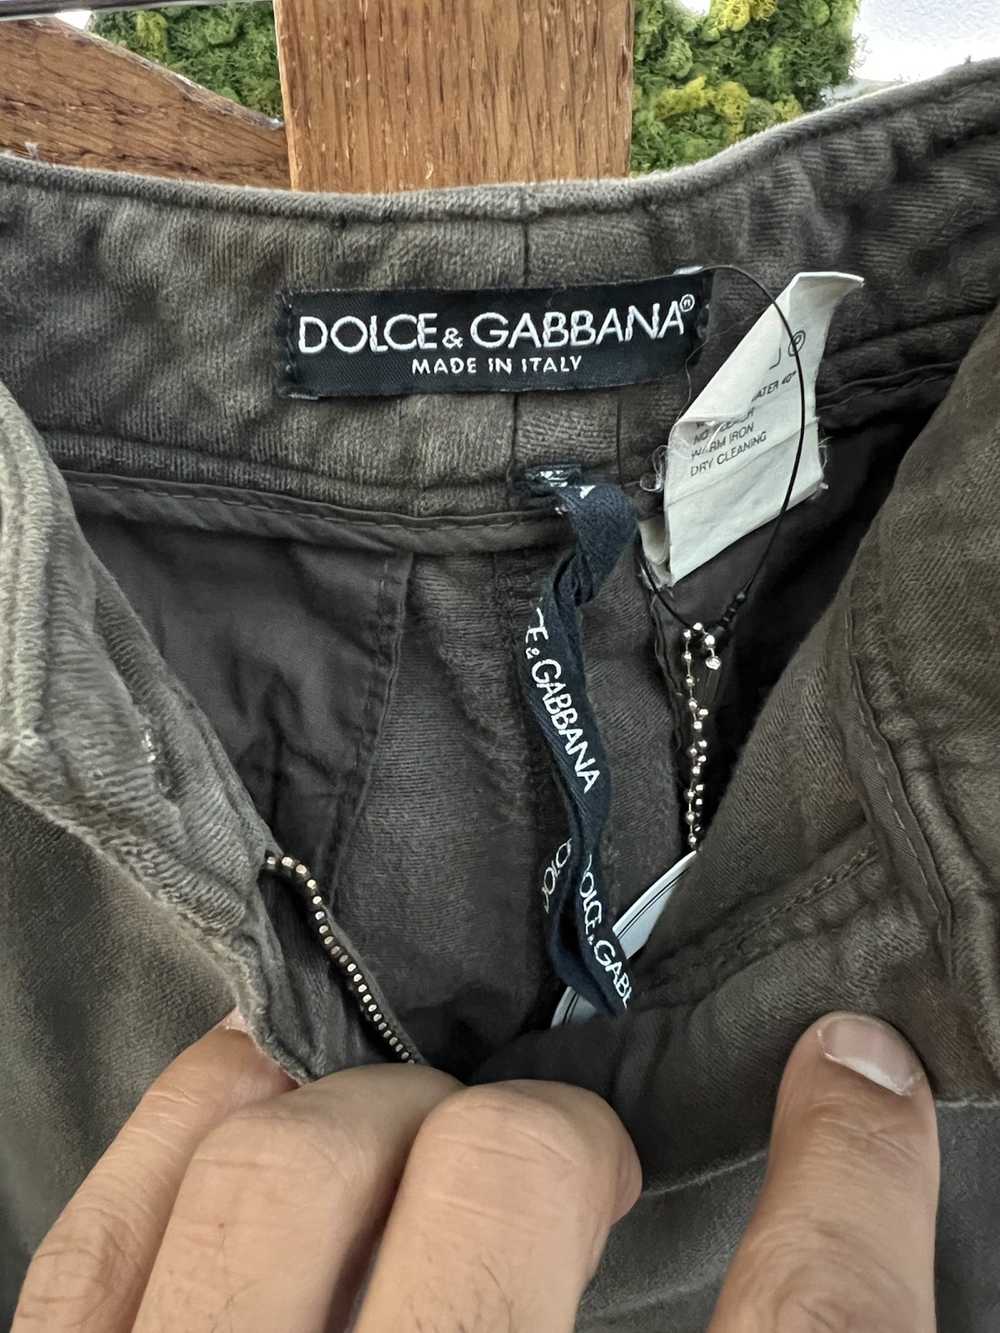 Dolce & Gabbana Dolce & Gabbana Flared Trouser - image 4